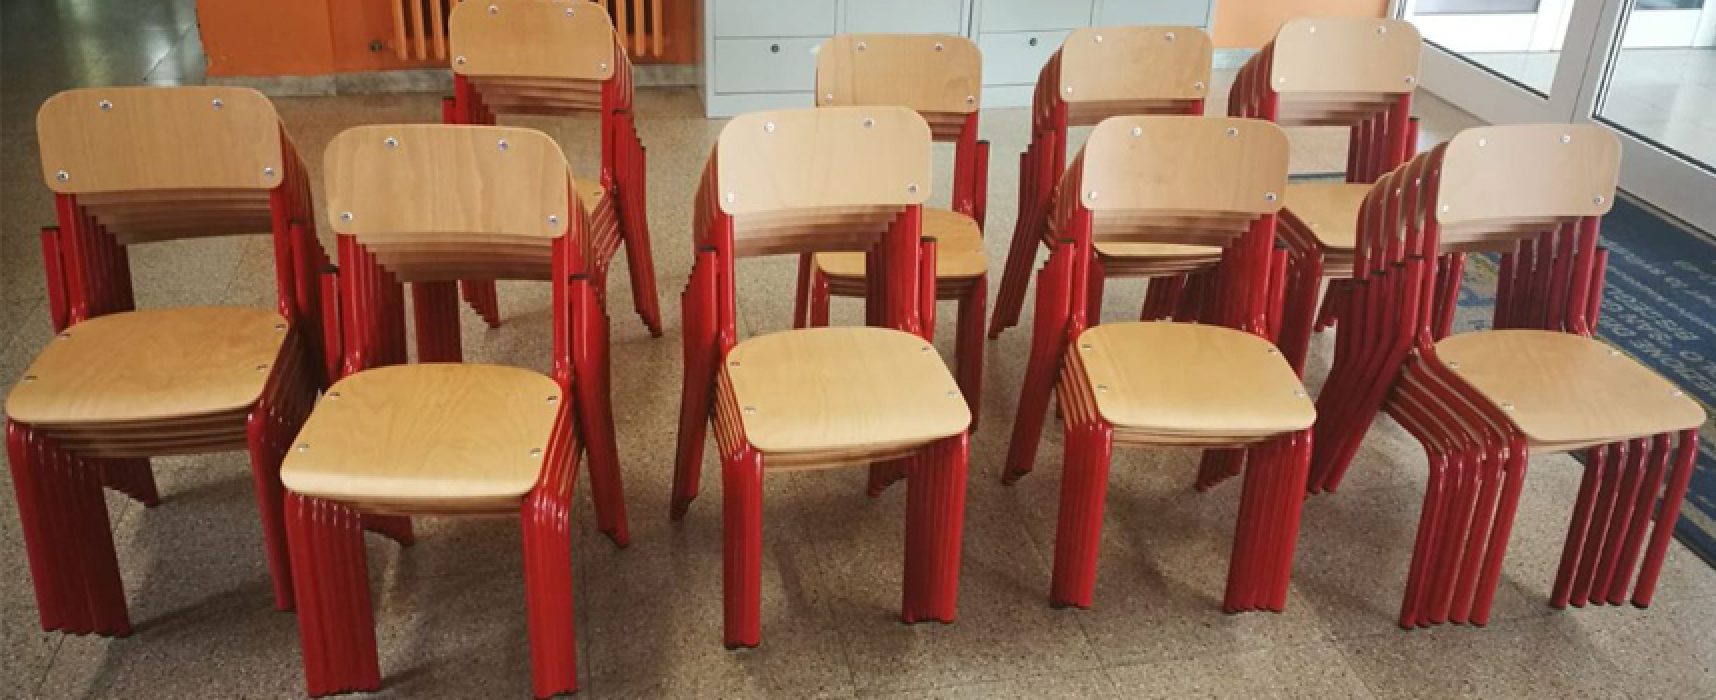 Scuola: consegnati banchi, sedie e attrezzature alle scuole elementari e medie